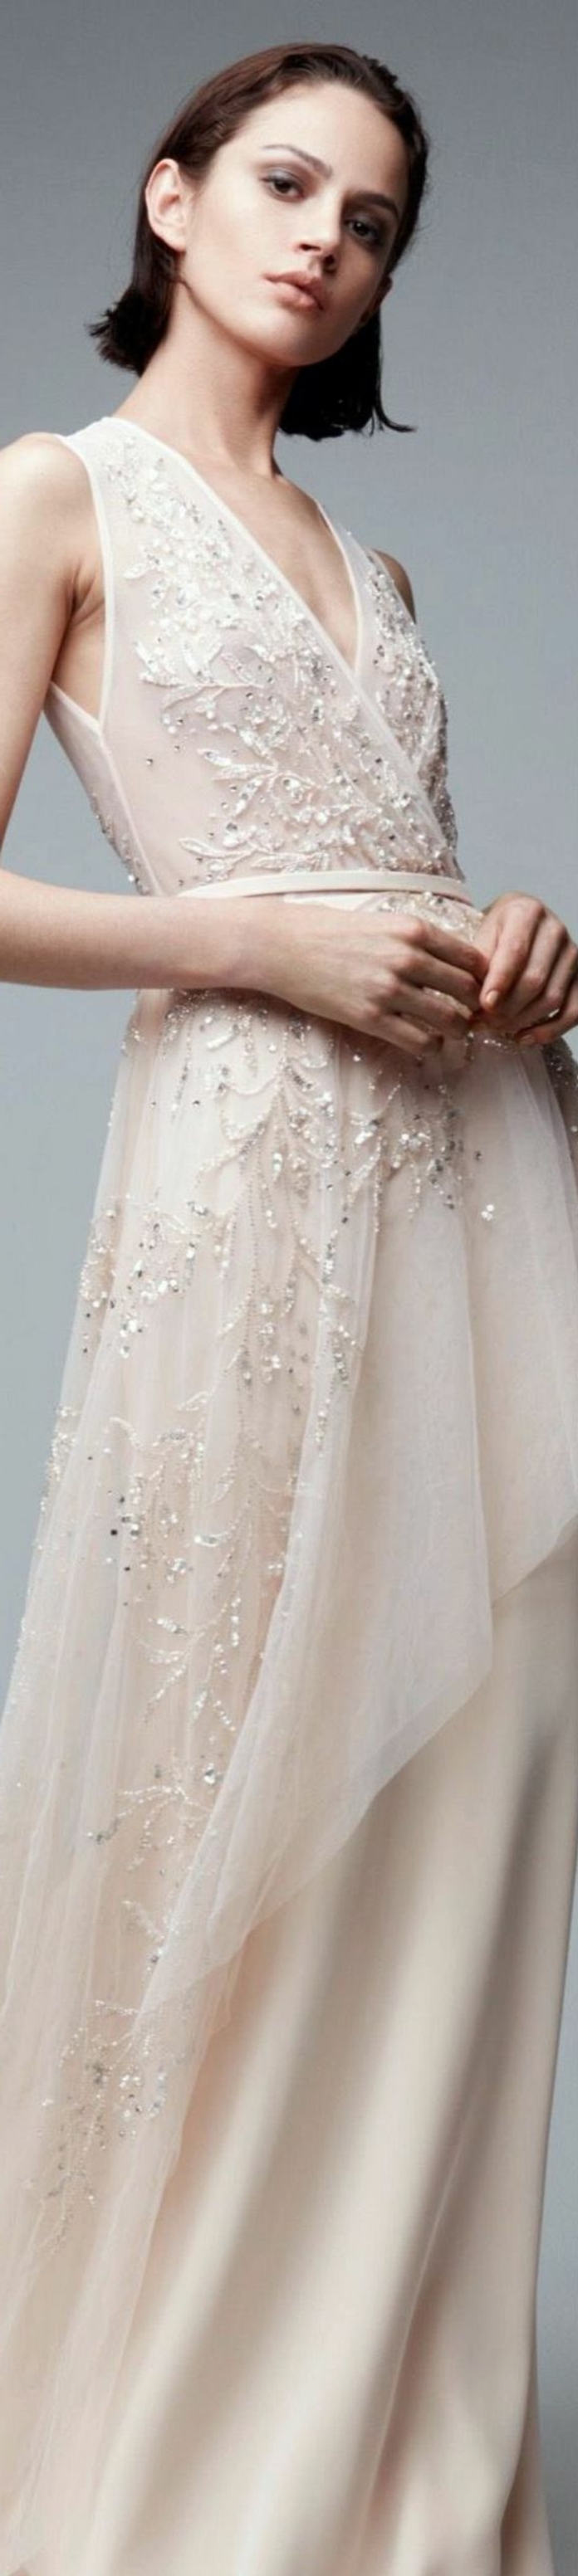 robe de mariée colorée, modèle simple avec broderies et paillettes 